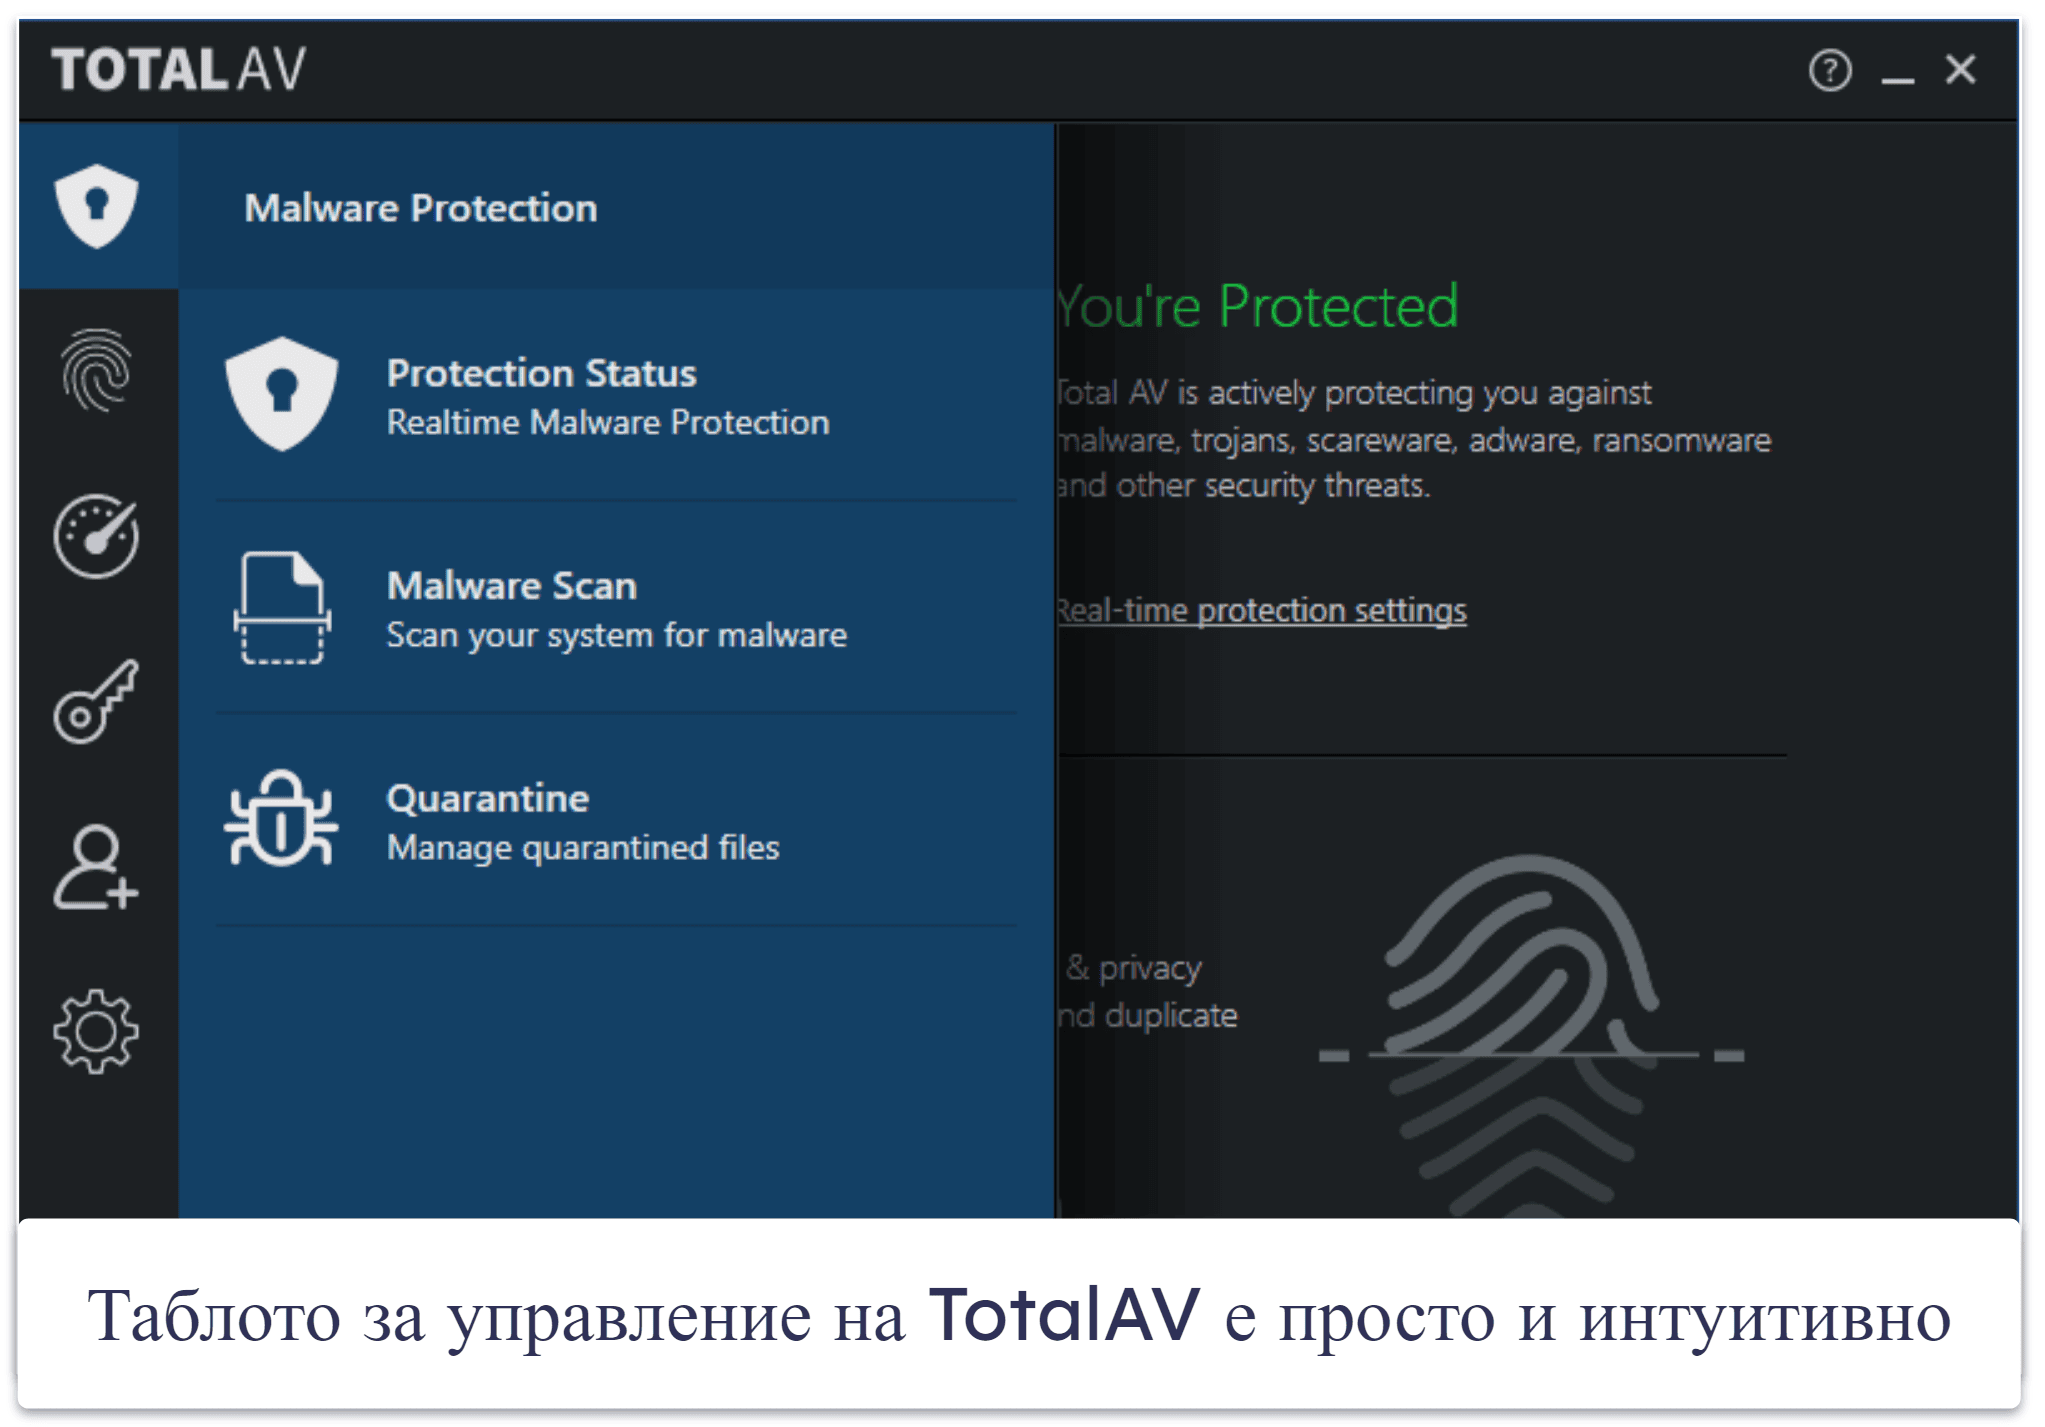 4. TotalAV Free Antivirus — Най-интуитивната безплатна антивирусна програма